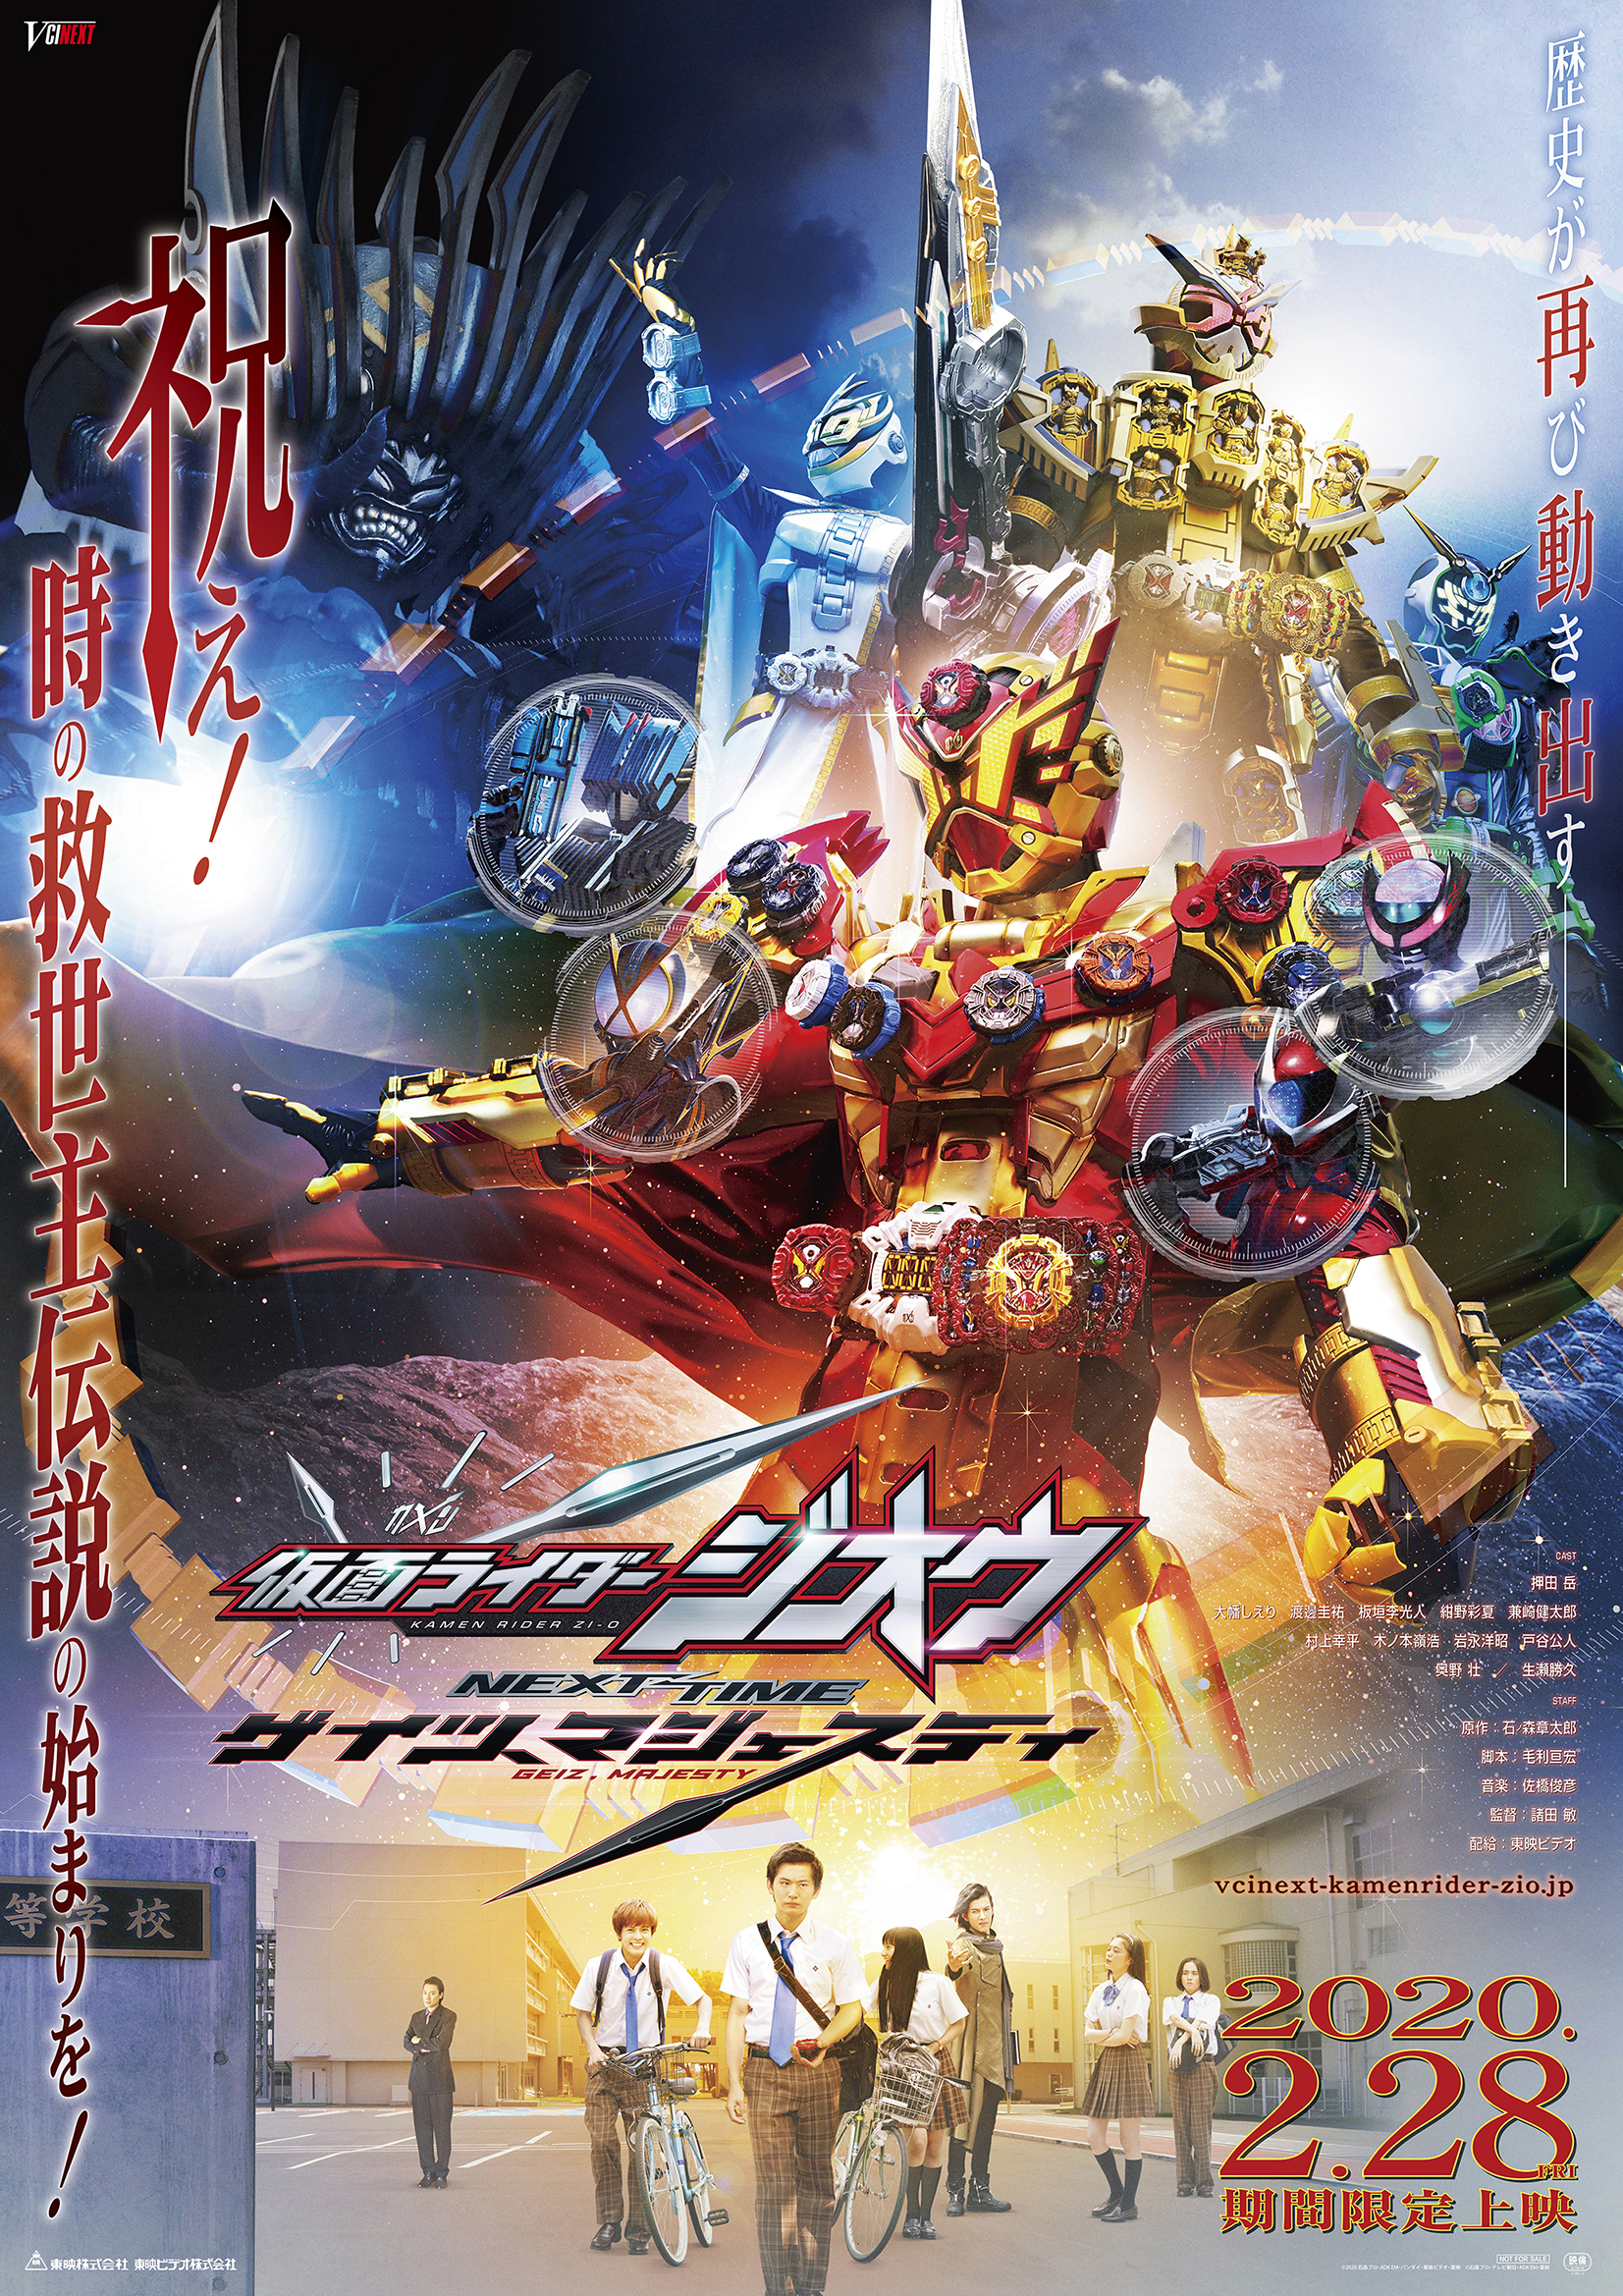 Kamen Rider Zi O Next Time Geiz Majesty Kamen Rider Wiki Fandom